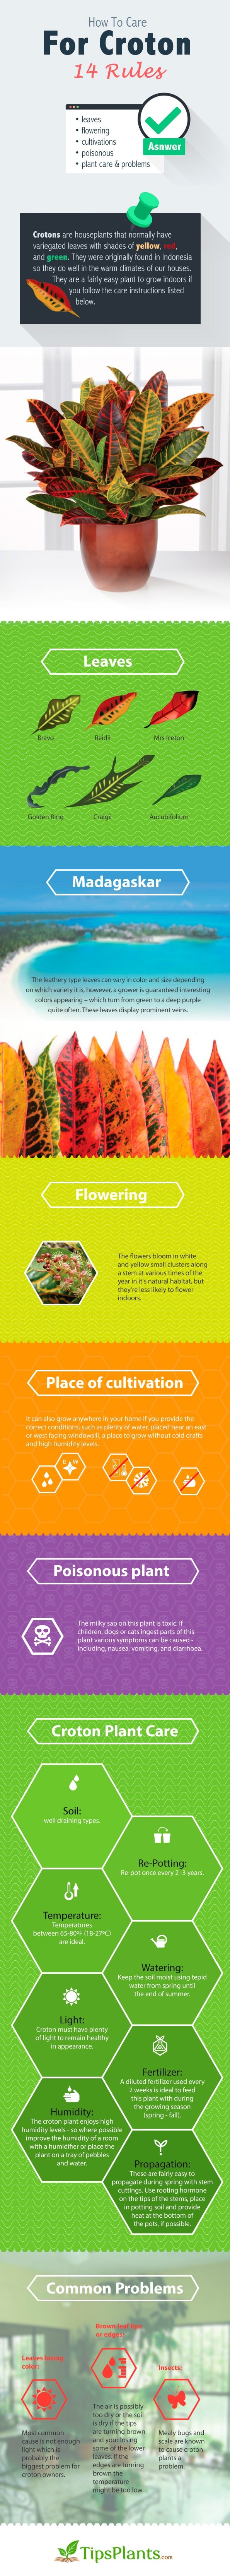 Croton infographic